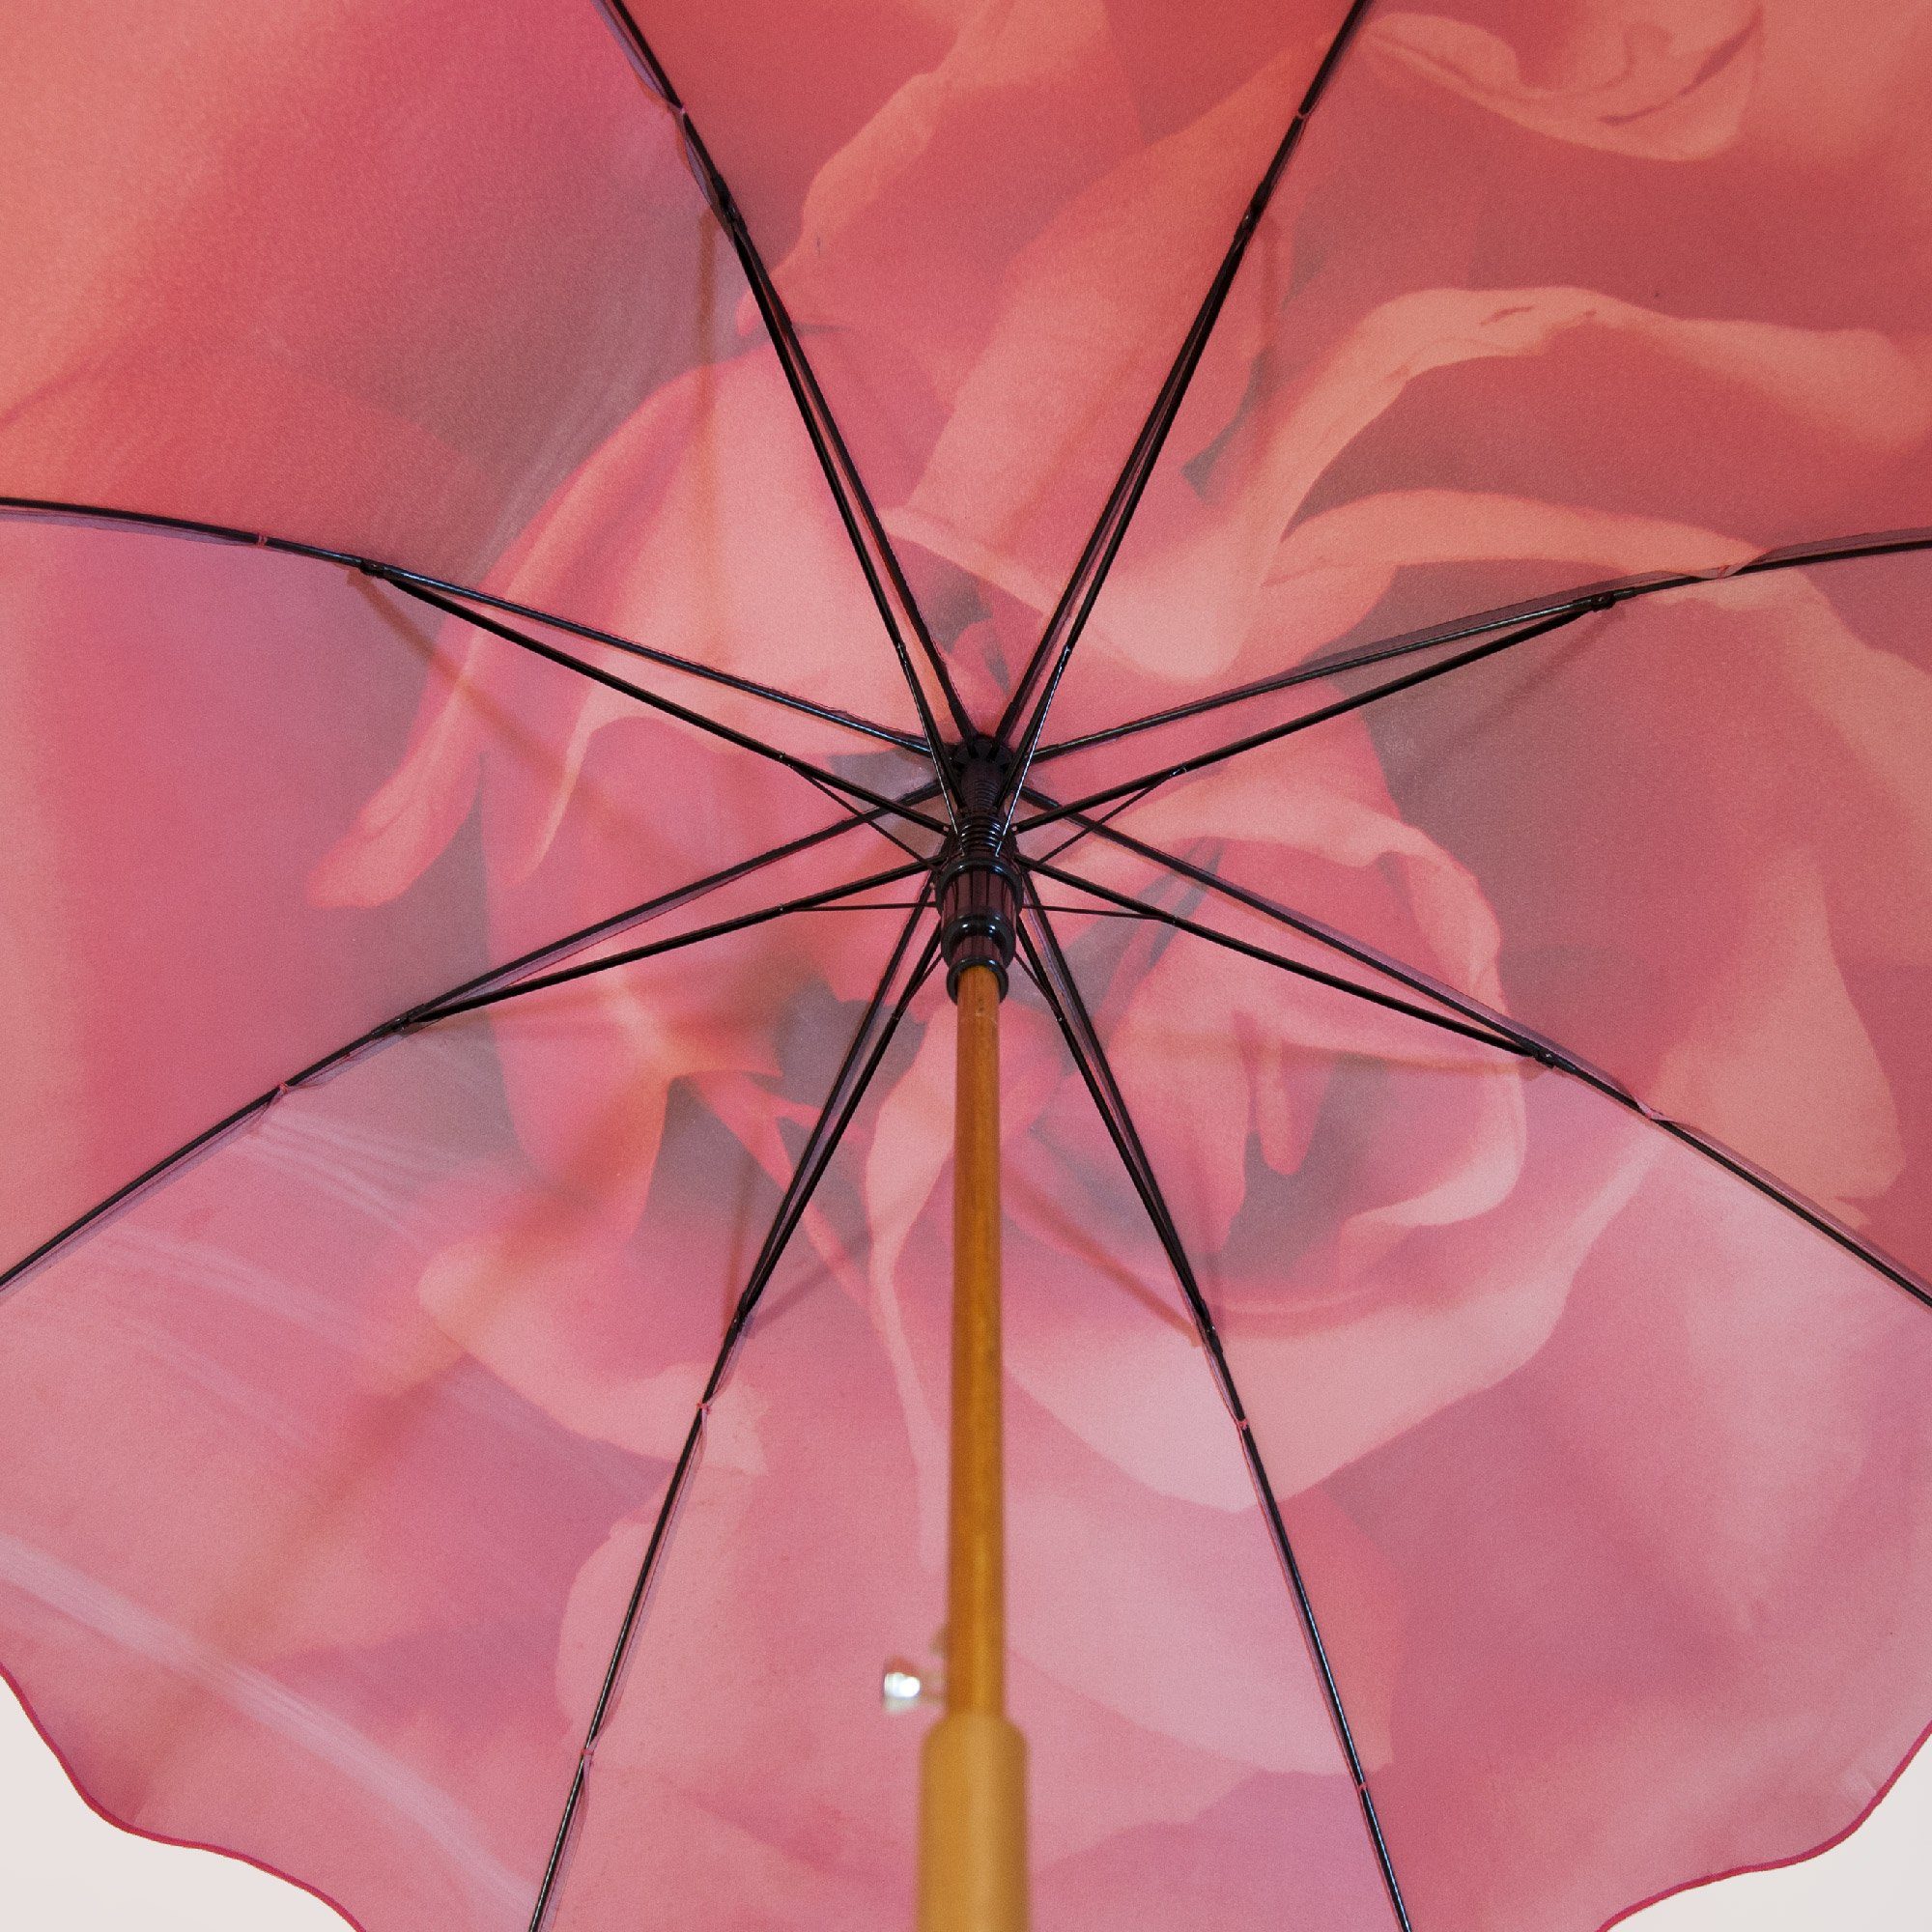 Damen, Mit Stockschirm Motiv ROSEMARIE Stockregenschirm Heidelberg Rose Regenschirm Motiv SCHULZ rot für